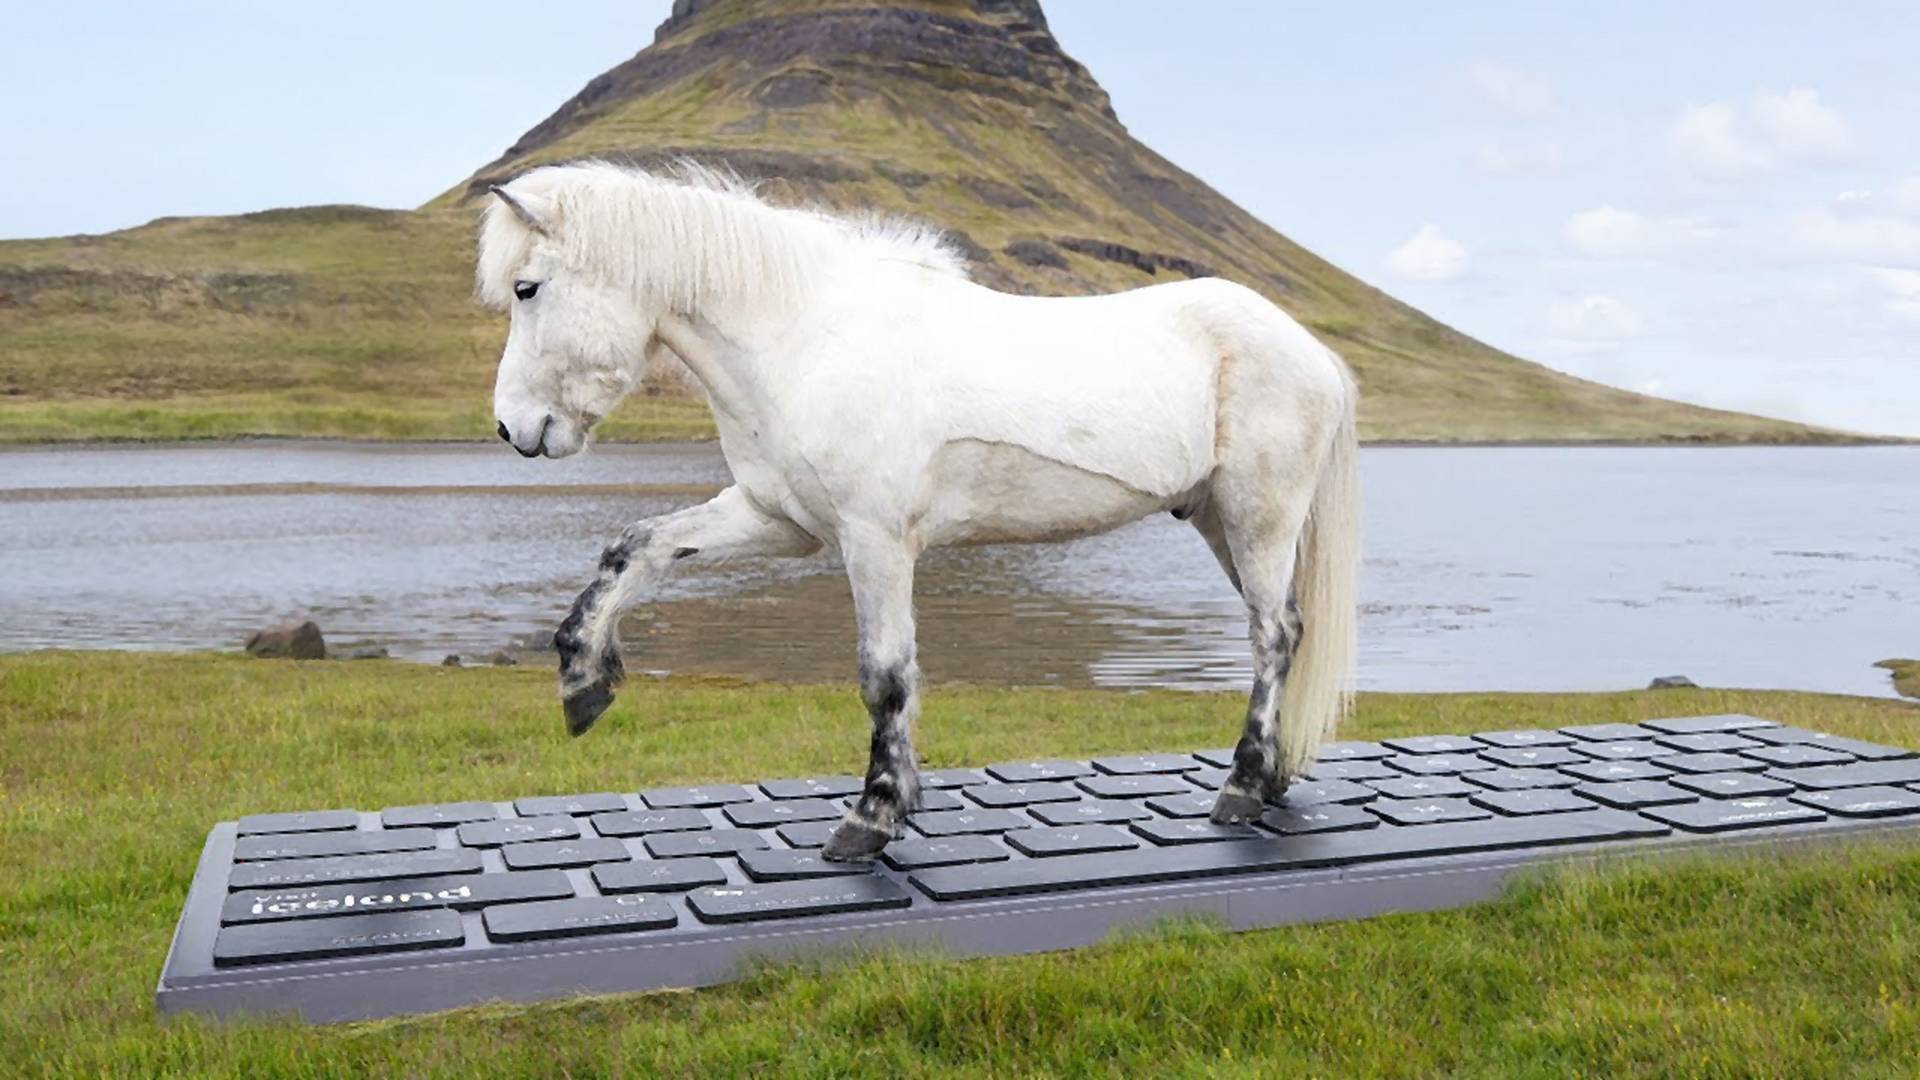 Konie z Islandii wyślą za ciebie e-maila na urlopie. Szef się nie zorientuje